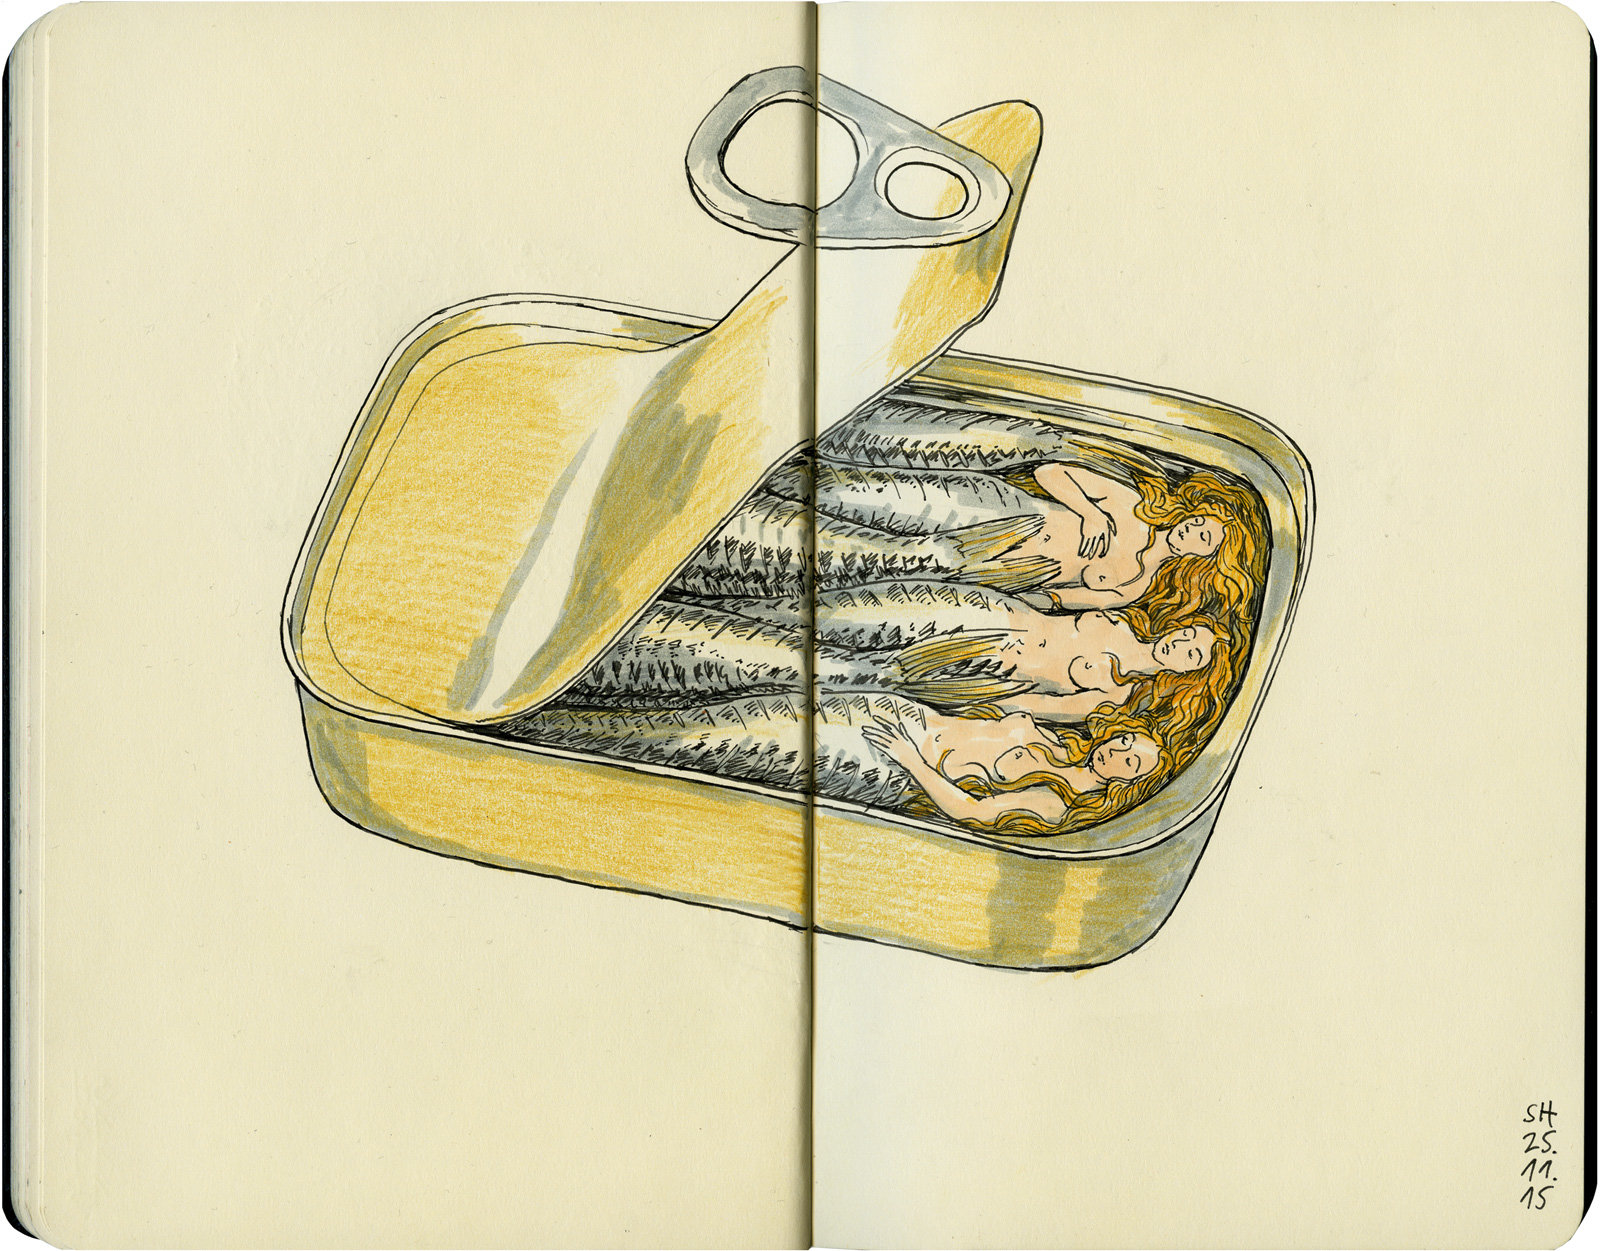 oculus-illustration-heusser-skizzenbuch-sardinenbuechse